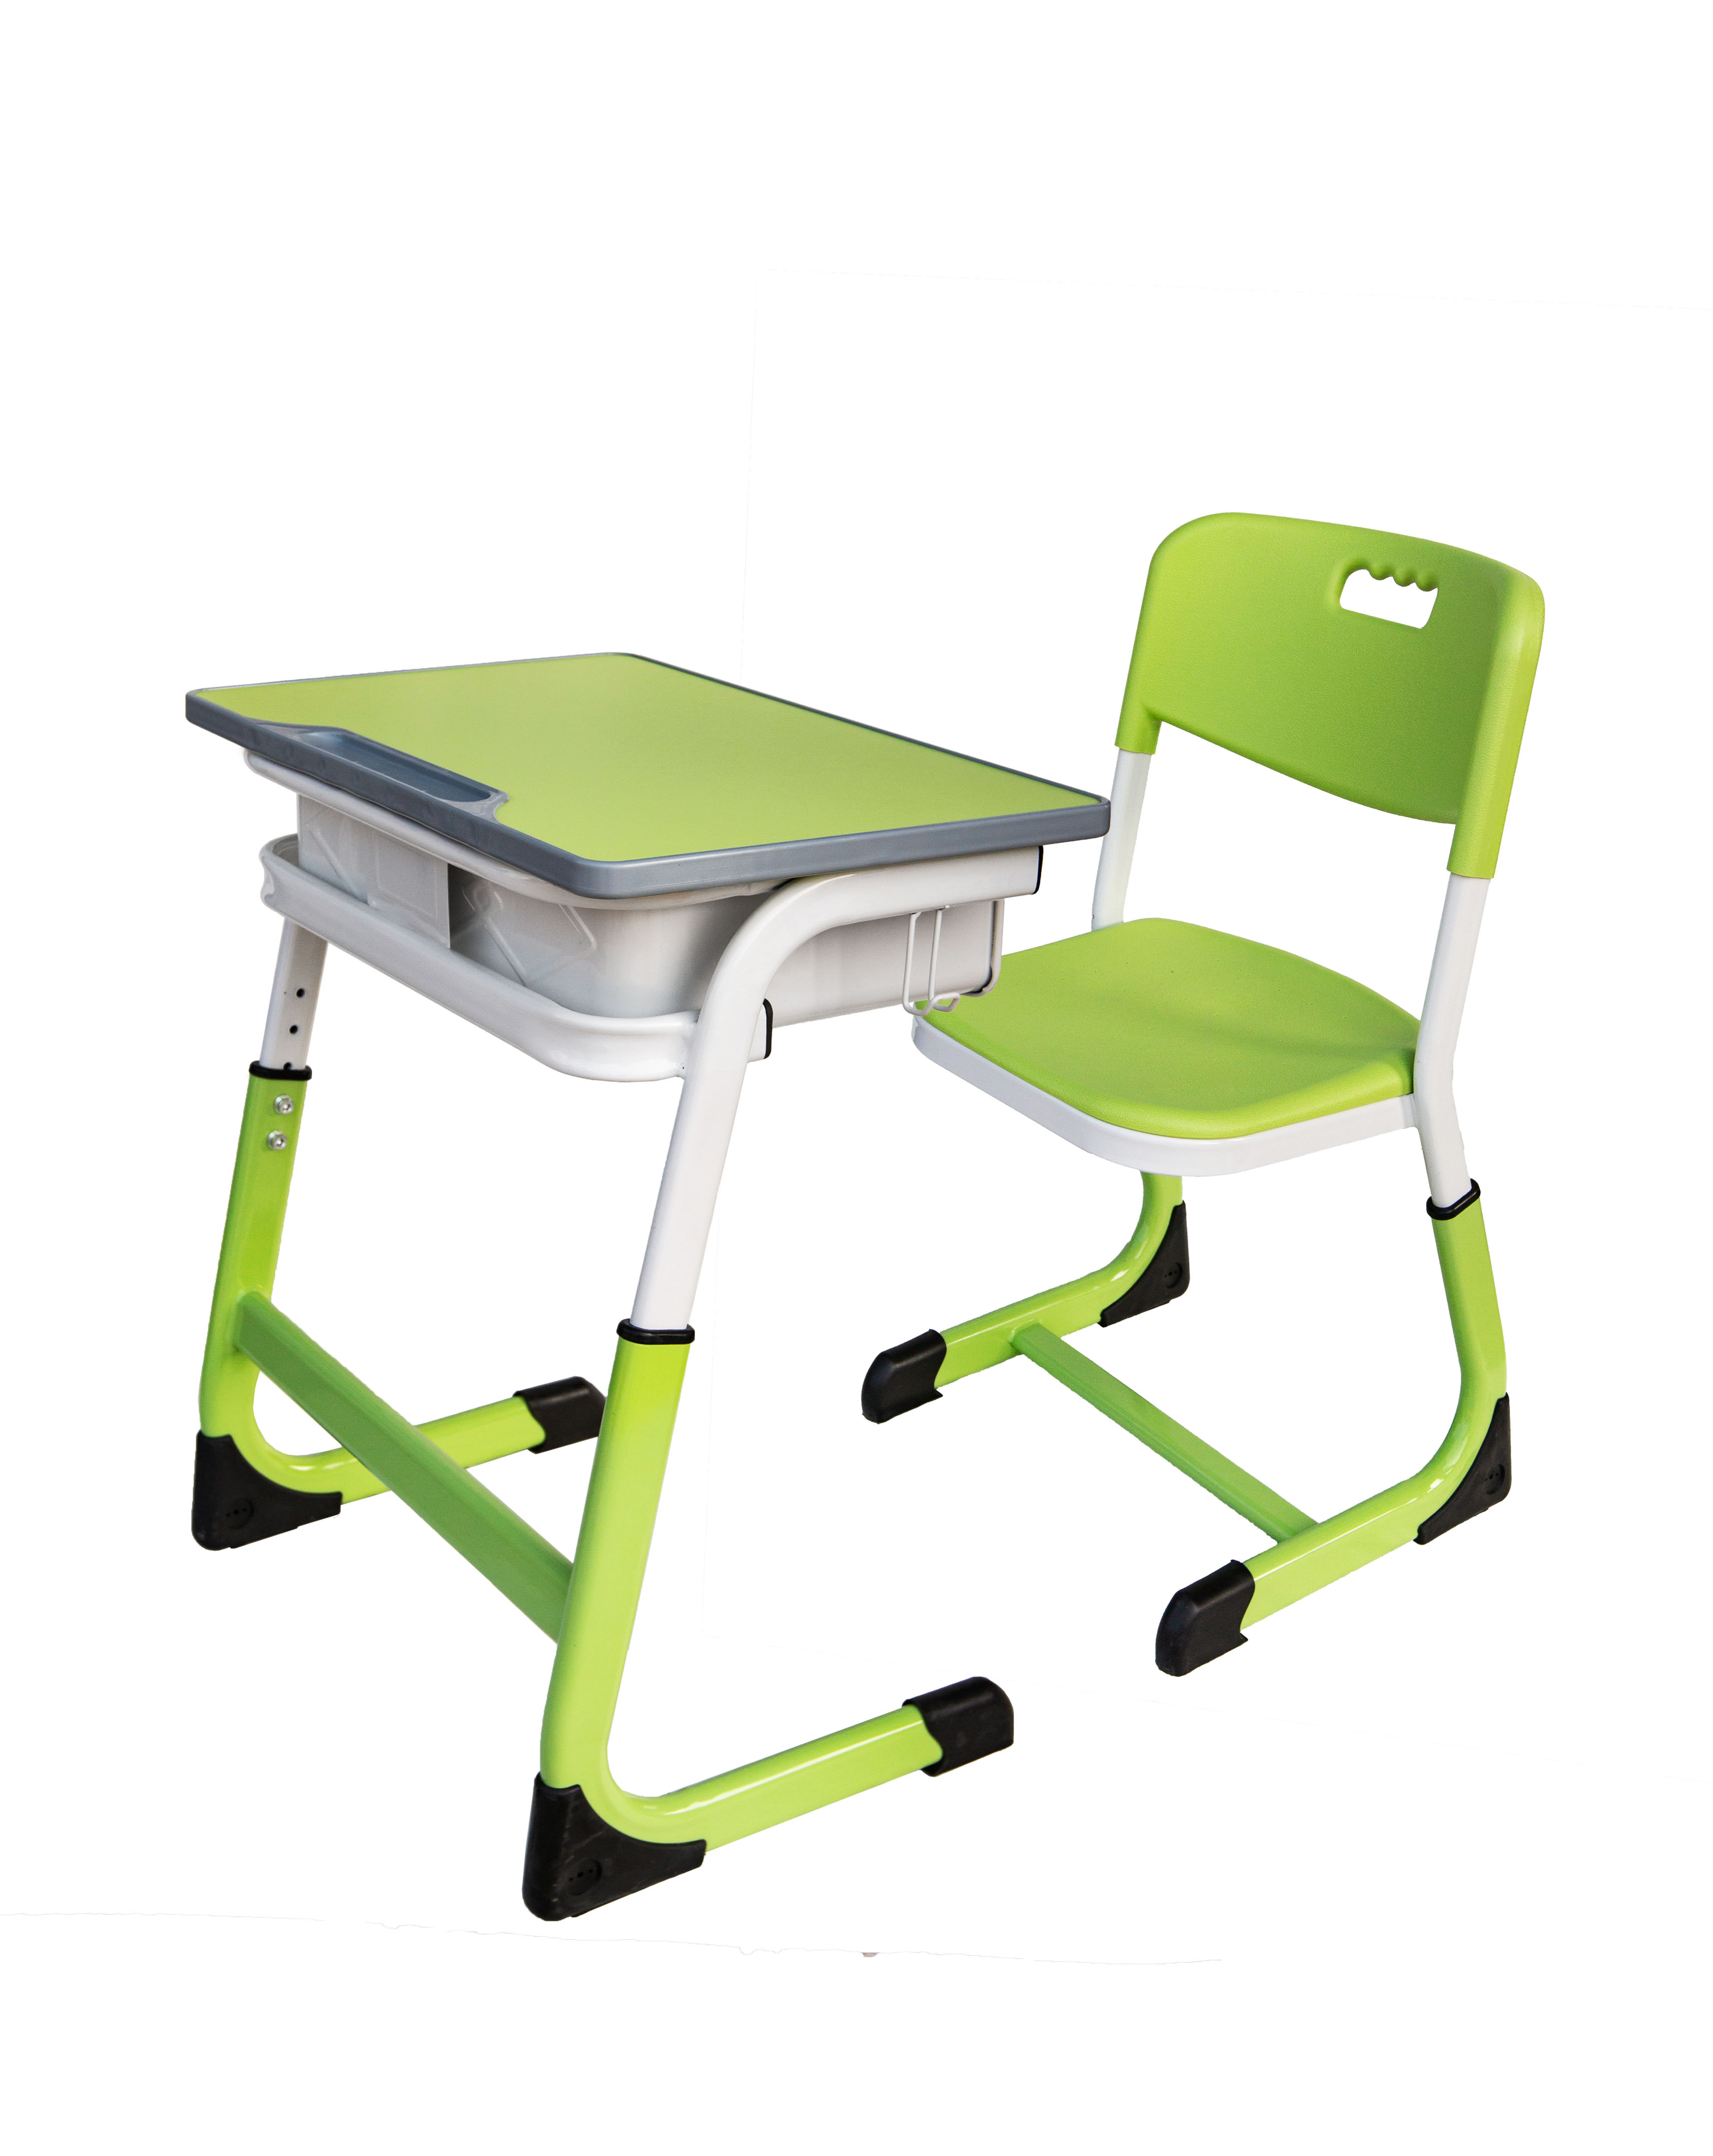 学生升降课桌椅ZYS-1005